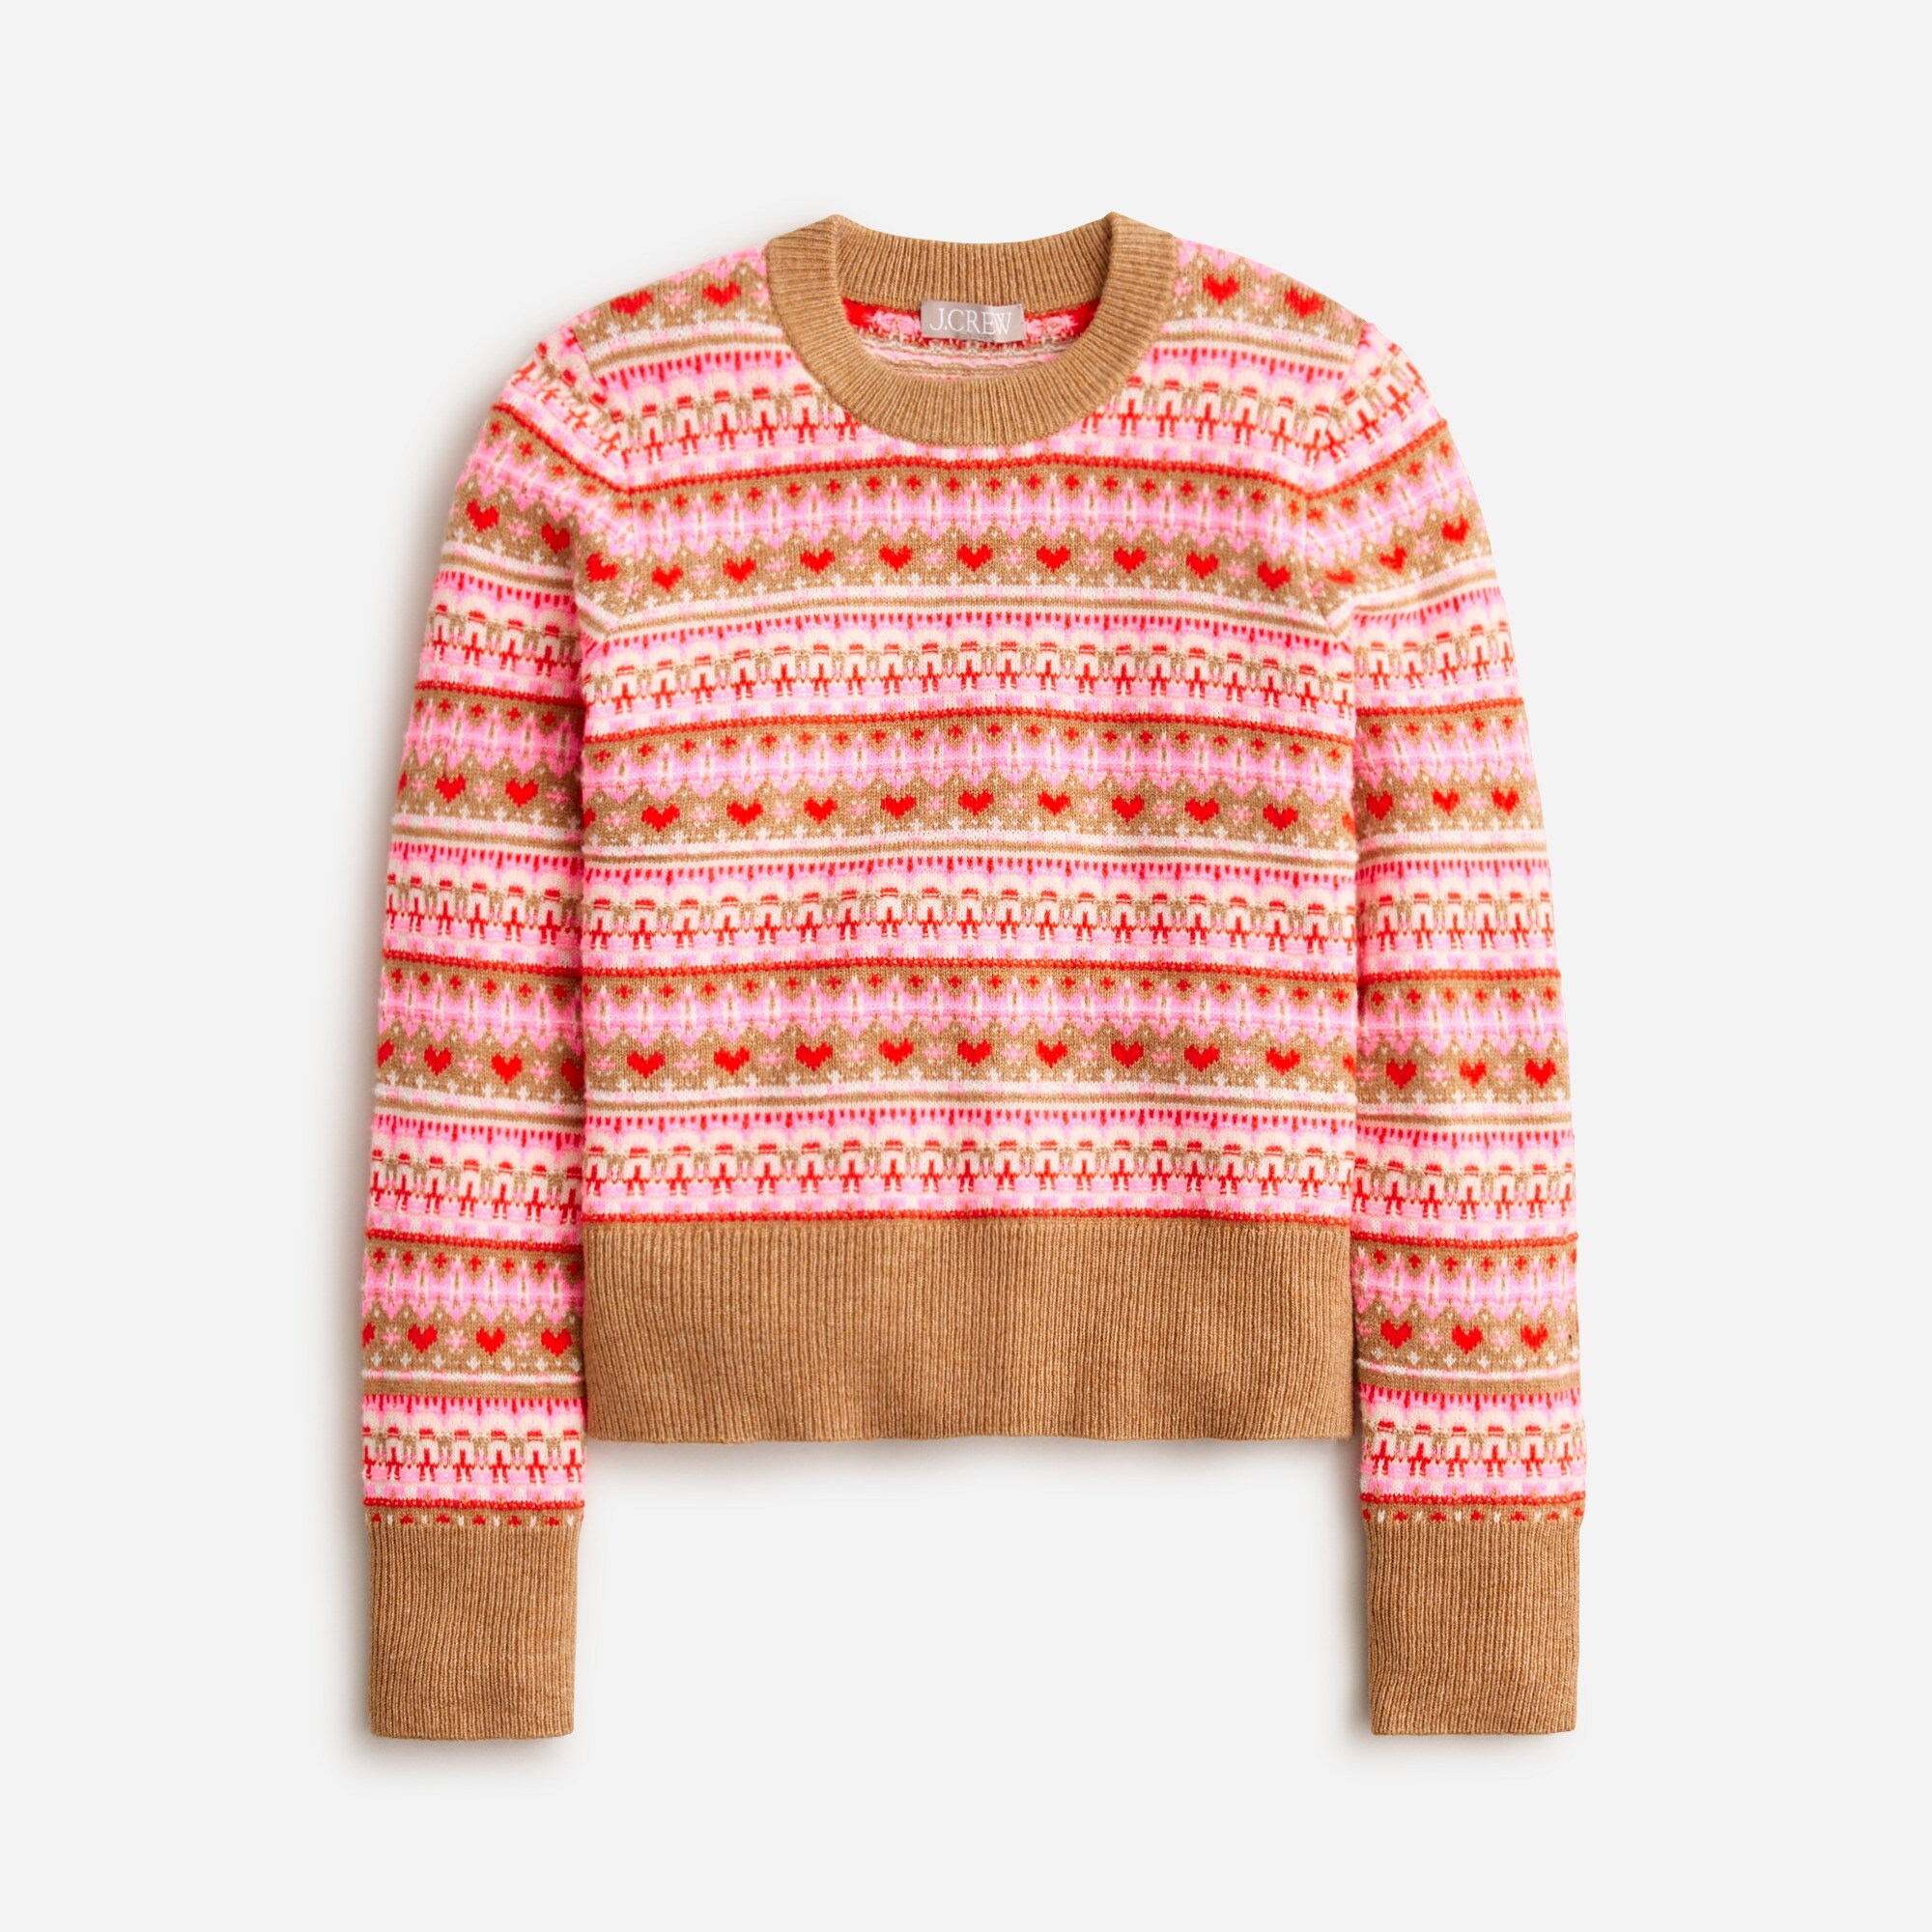  Shrunken Fair Isle crewneck sweater